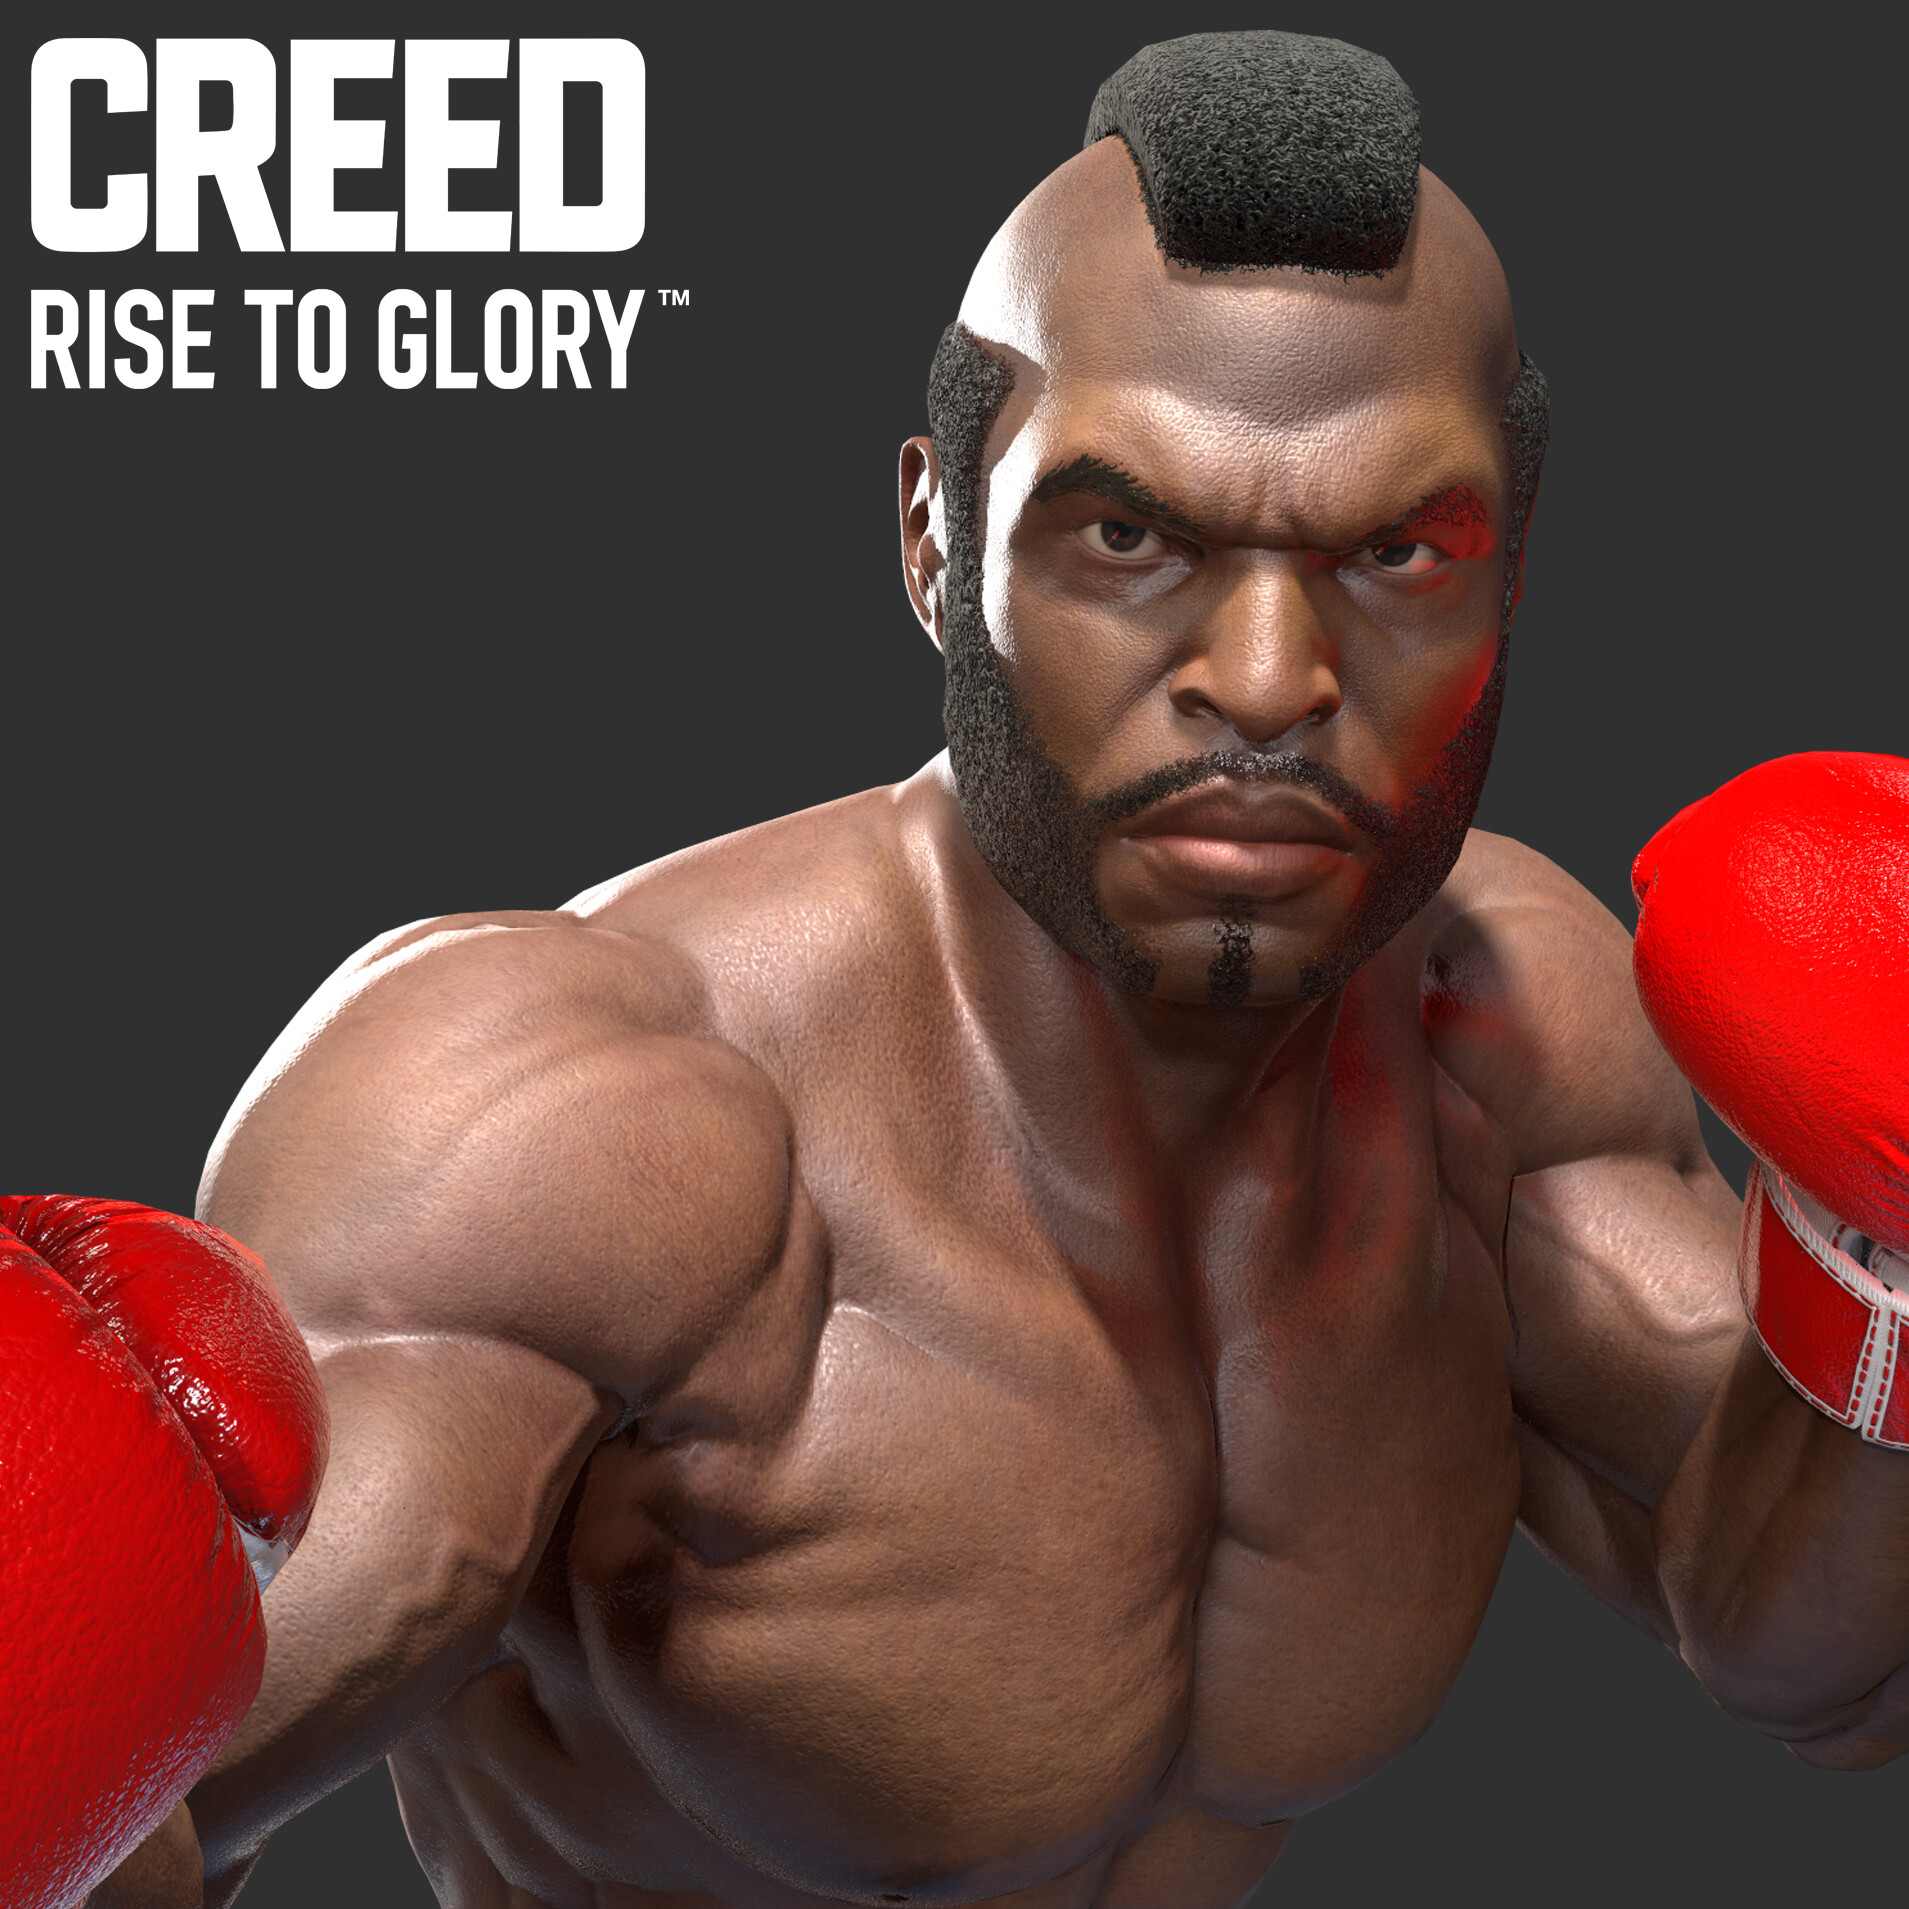 Creed glory vr. Creed VR. Creed VR игра. Игра Creed Rise to Glory. Игра Creed Rise to Glory в VR.